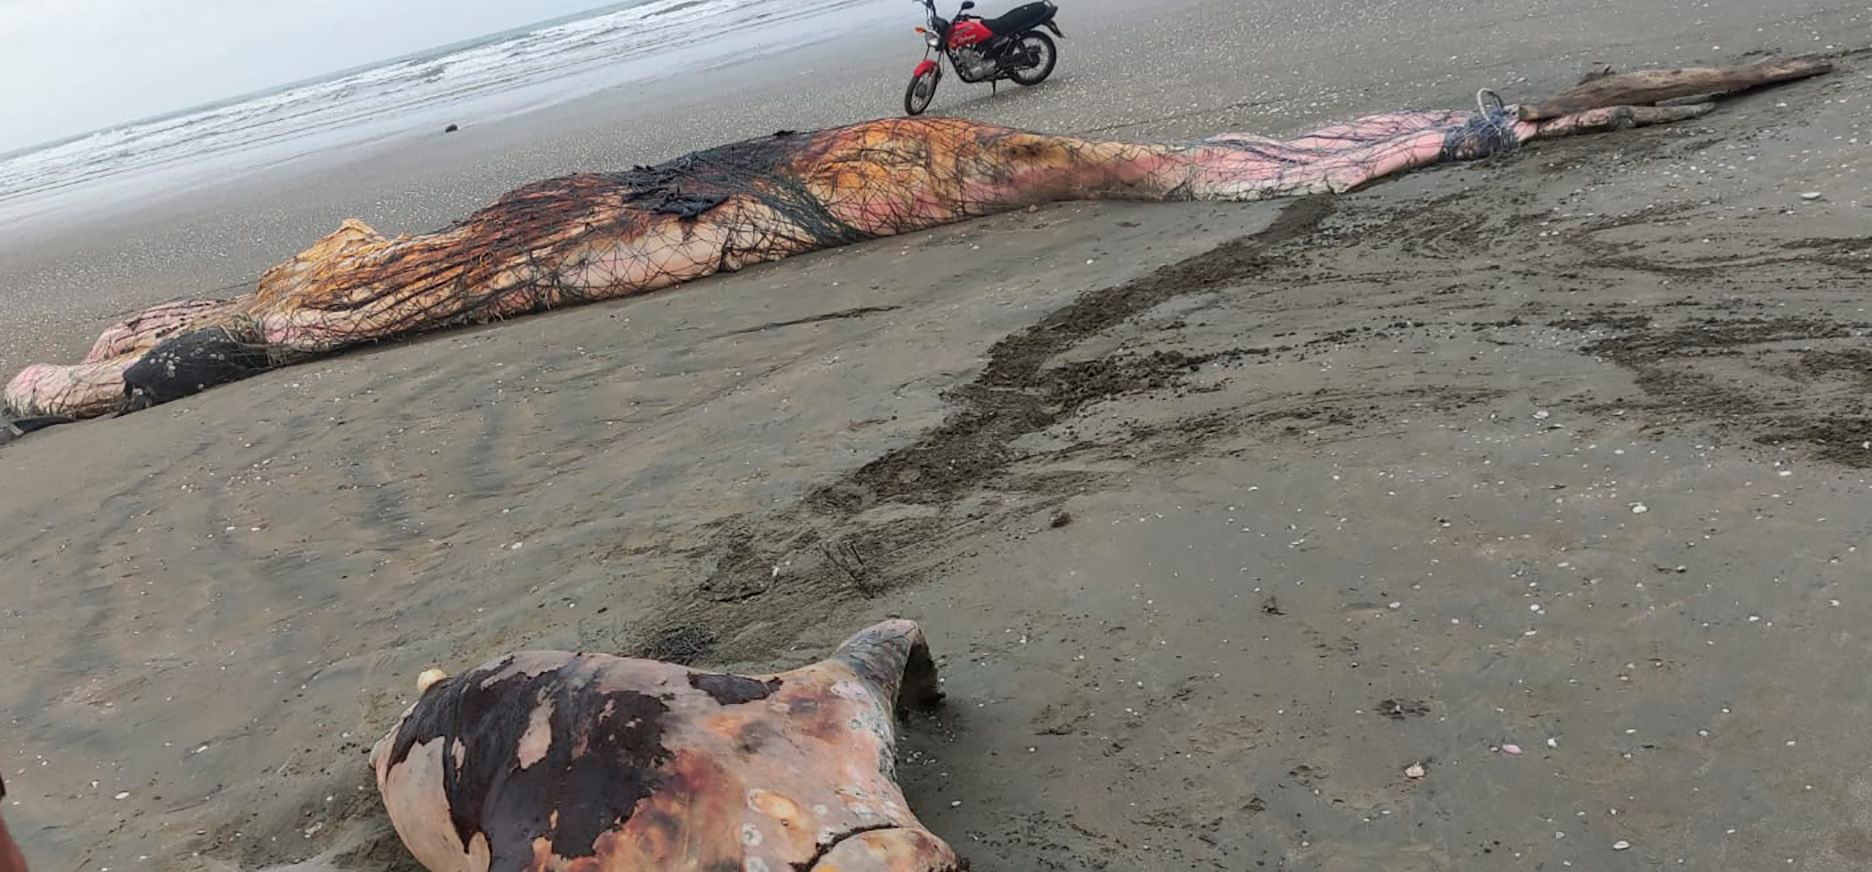 Enredadas en mallas de pesca, cuatro especies marinas fueron halladas en estado de descomposición en playa de Manabí